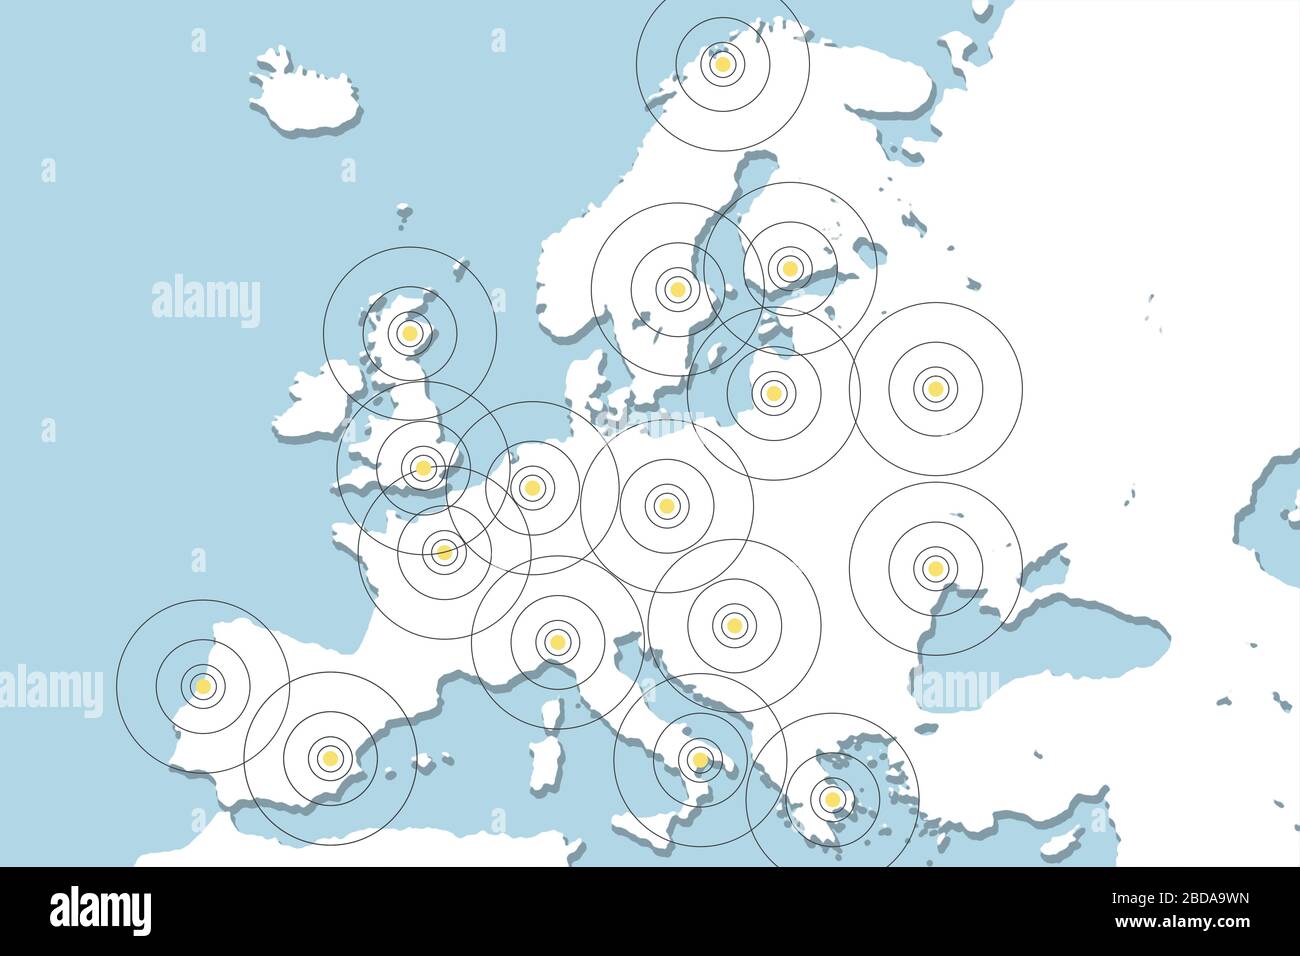 Suivi de téléphone mobile. Illustration avec la carte de l'Europe et les téléphones mobiles. Banque D'Images